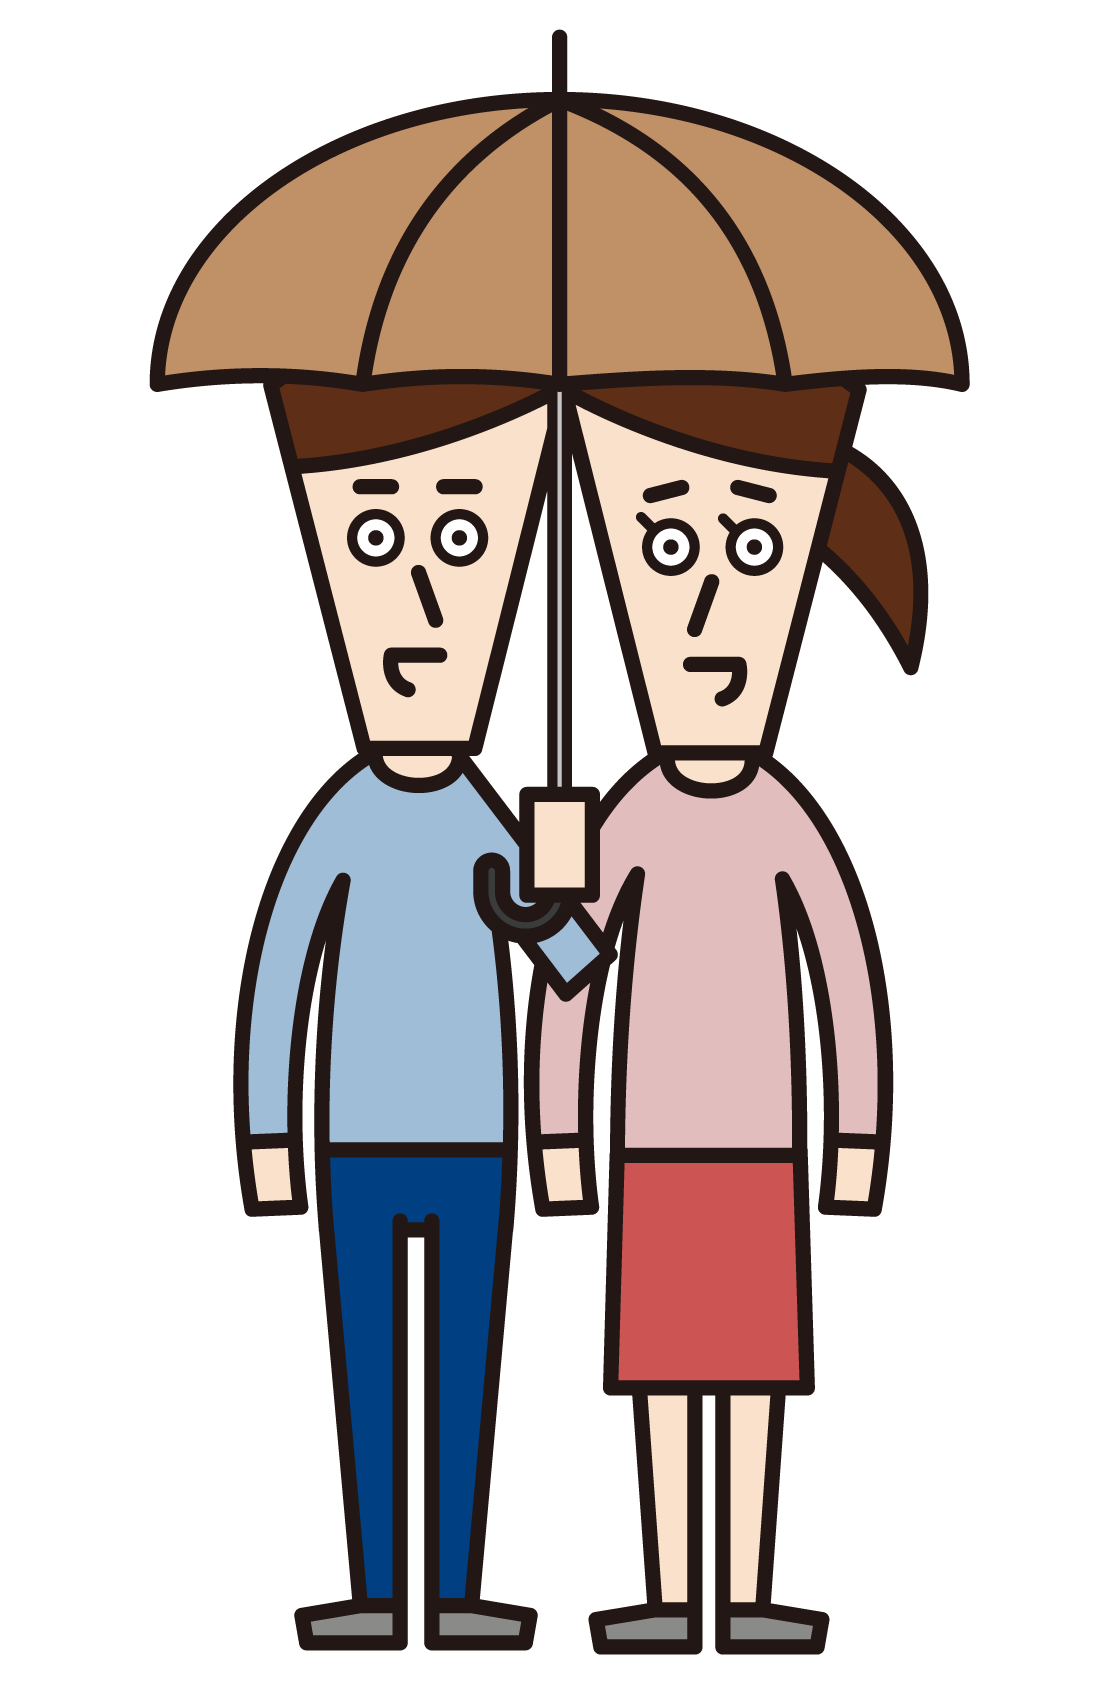 일치하는 우산을 입고 있는 커플(평범한 옷을 입은 사람)의 일러스트